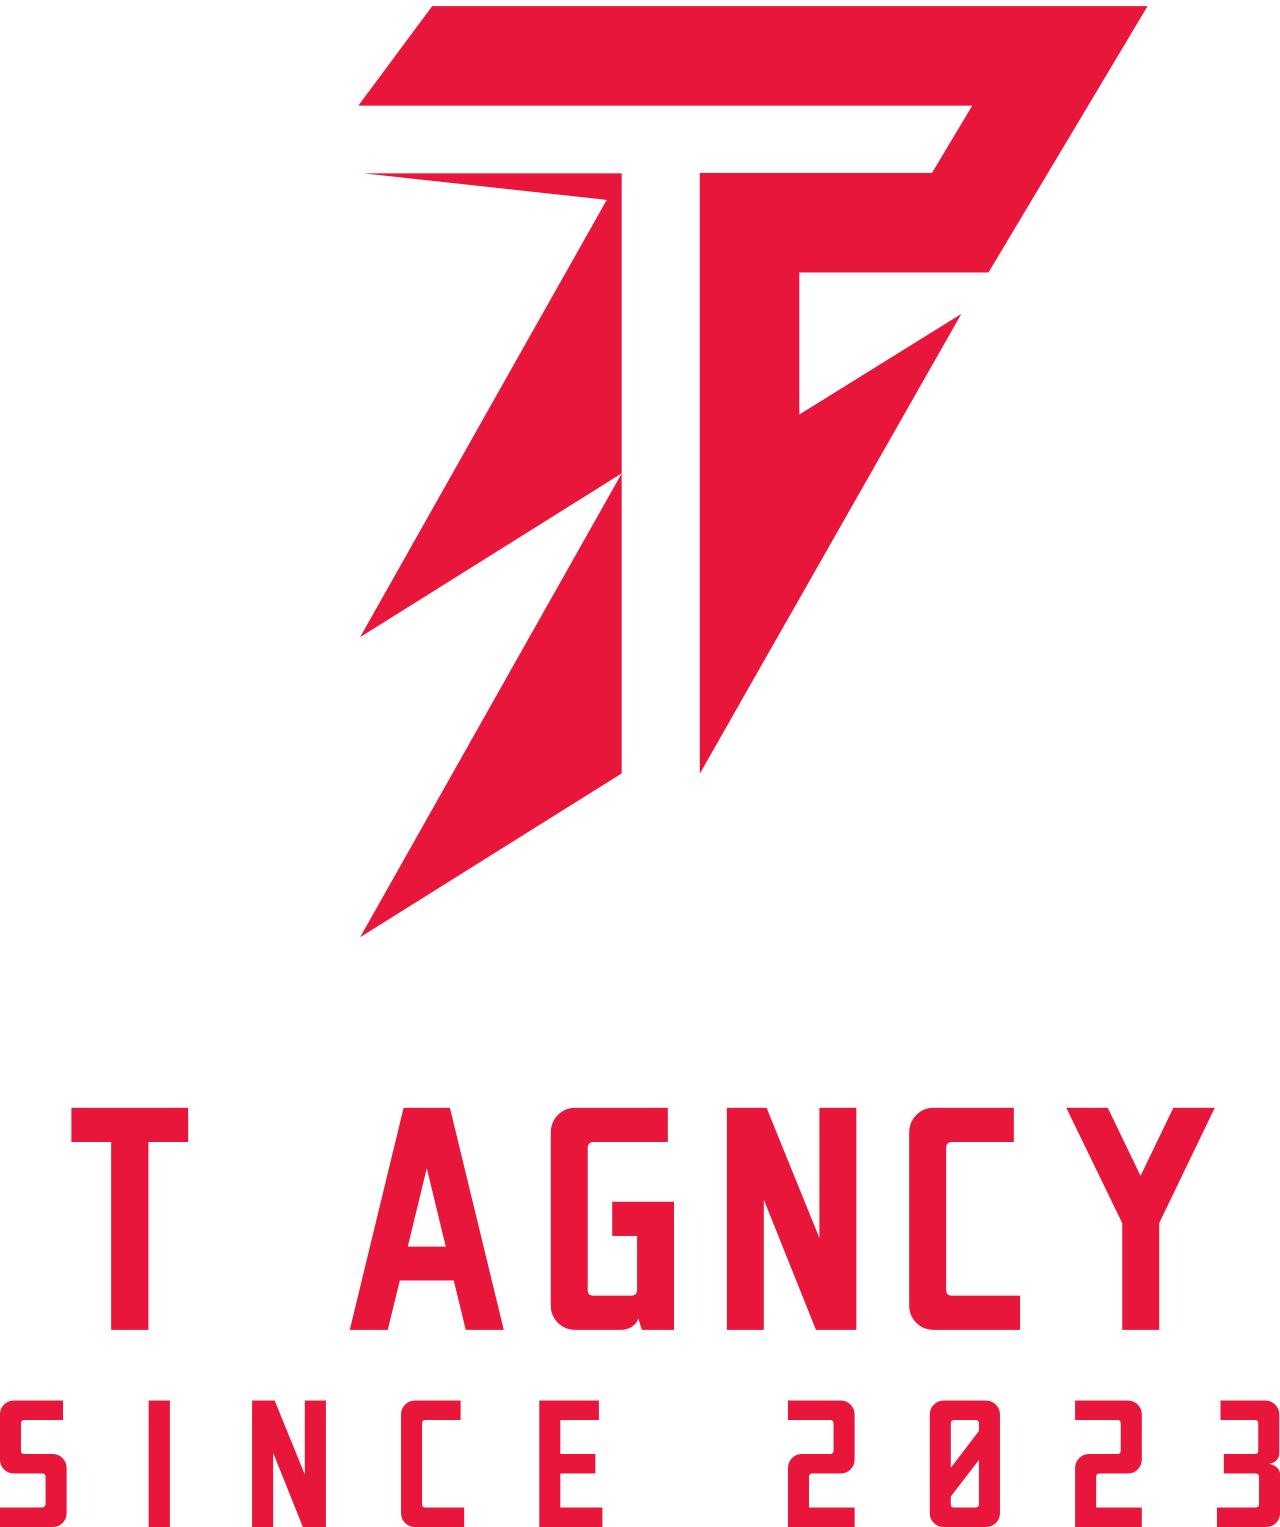 T AGNCY's logo